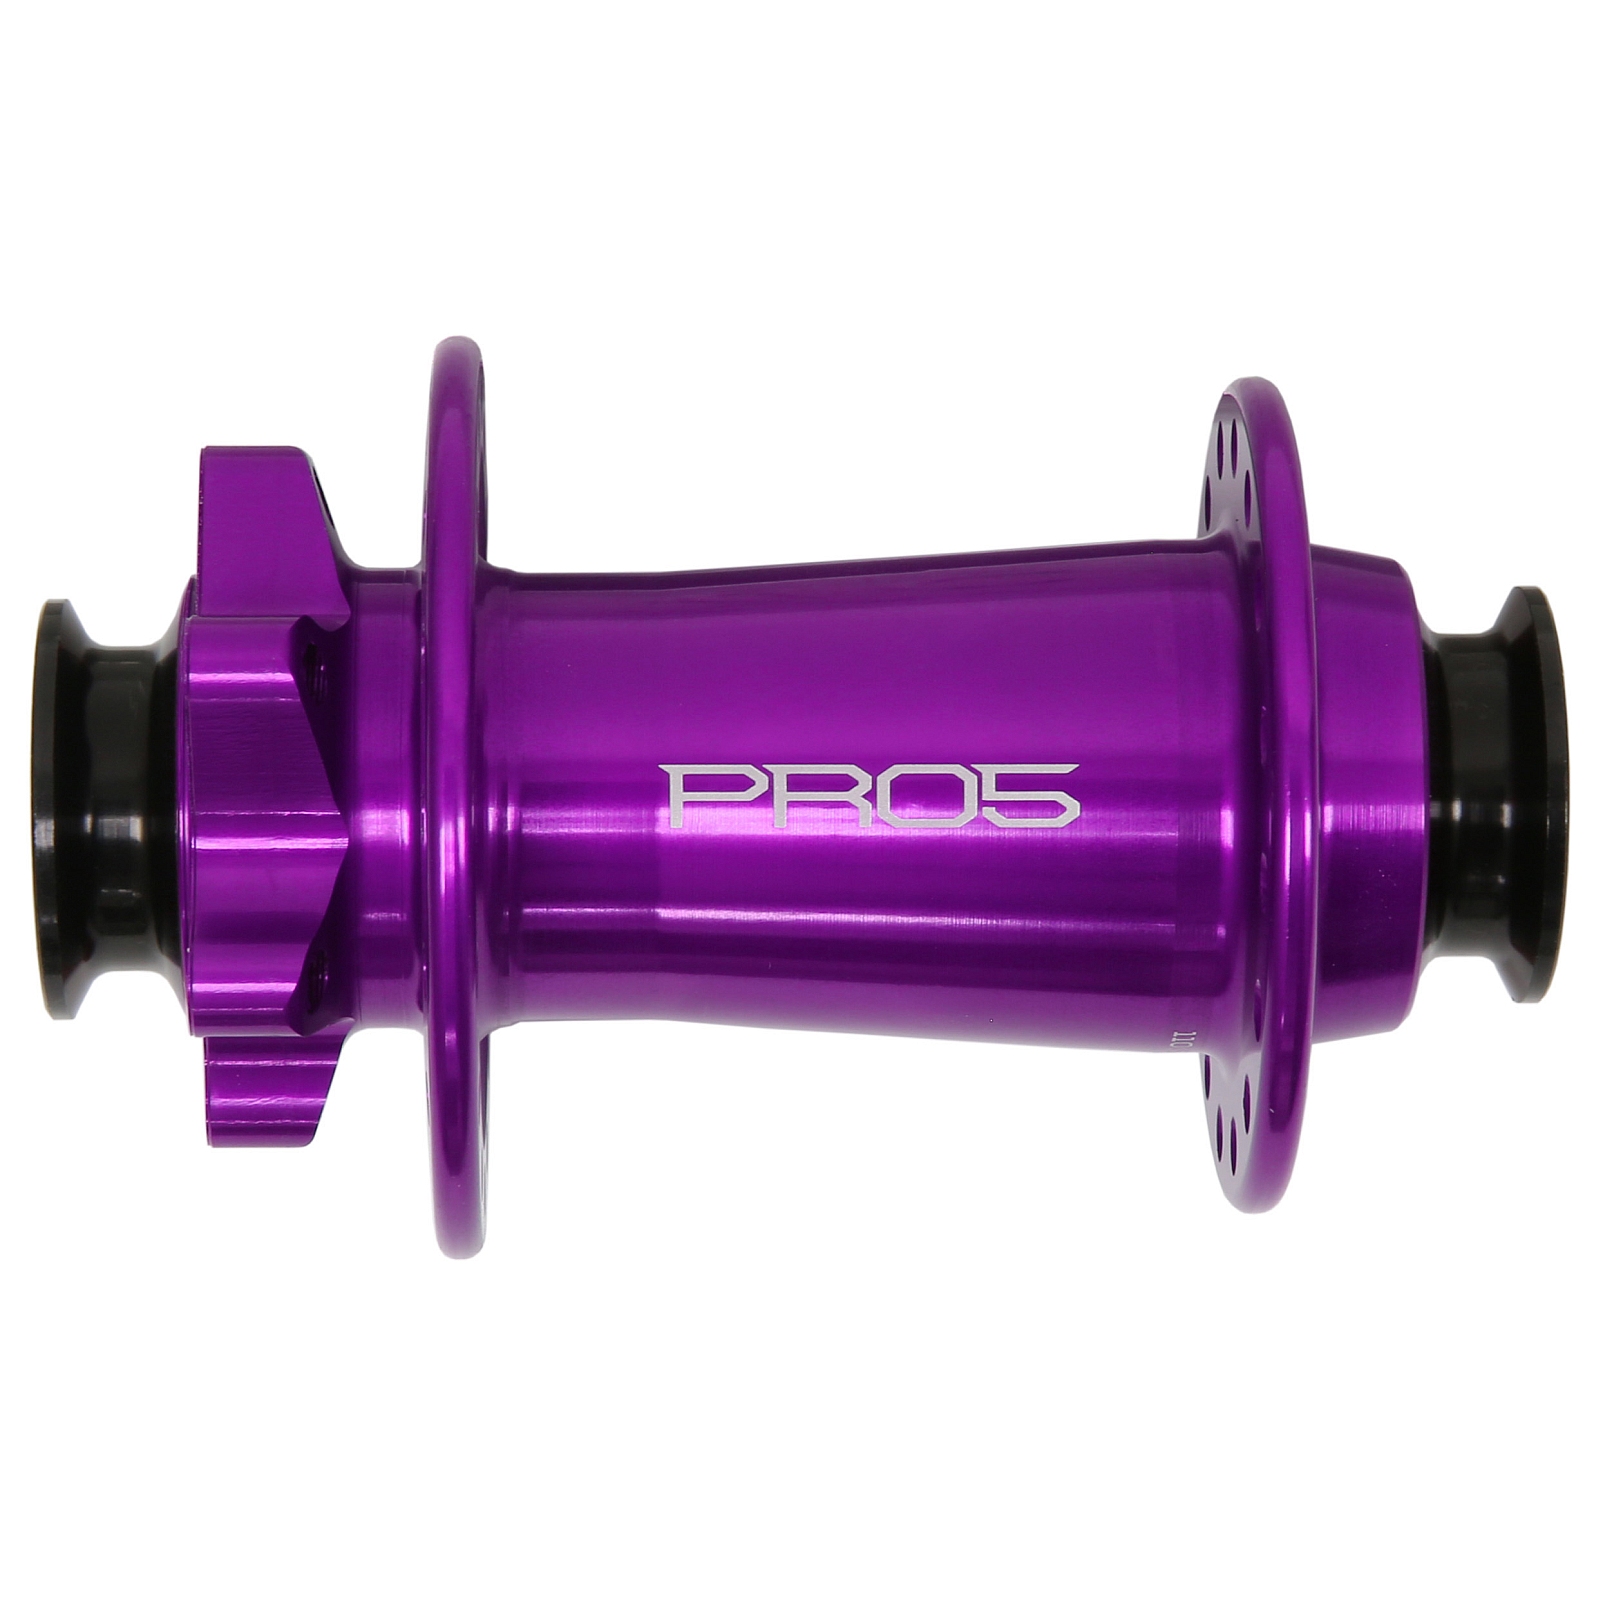 Productfoto van Hope Pro 5 Voorwielnaaf - 6-Bolt - 15x110mm Boost Torque - paars